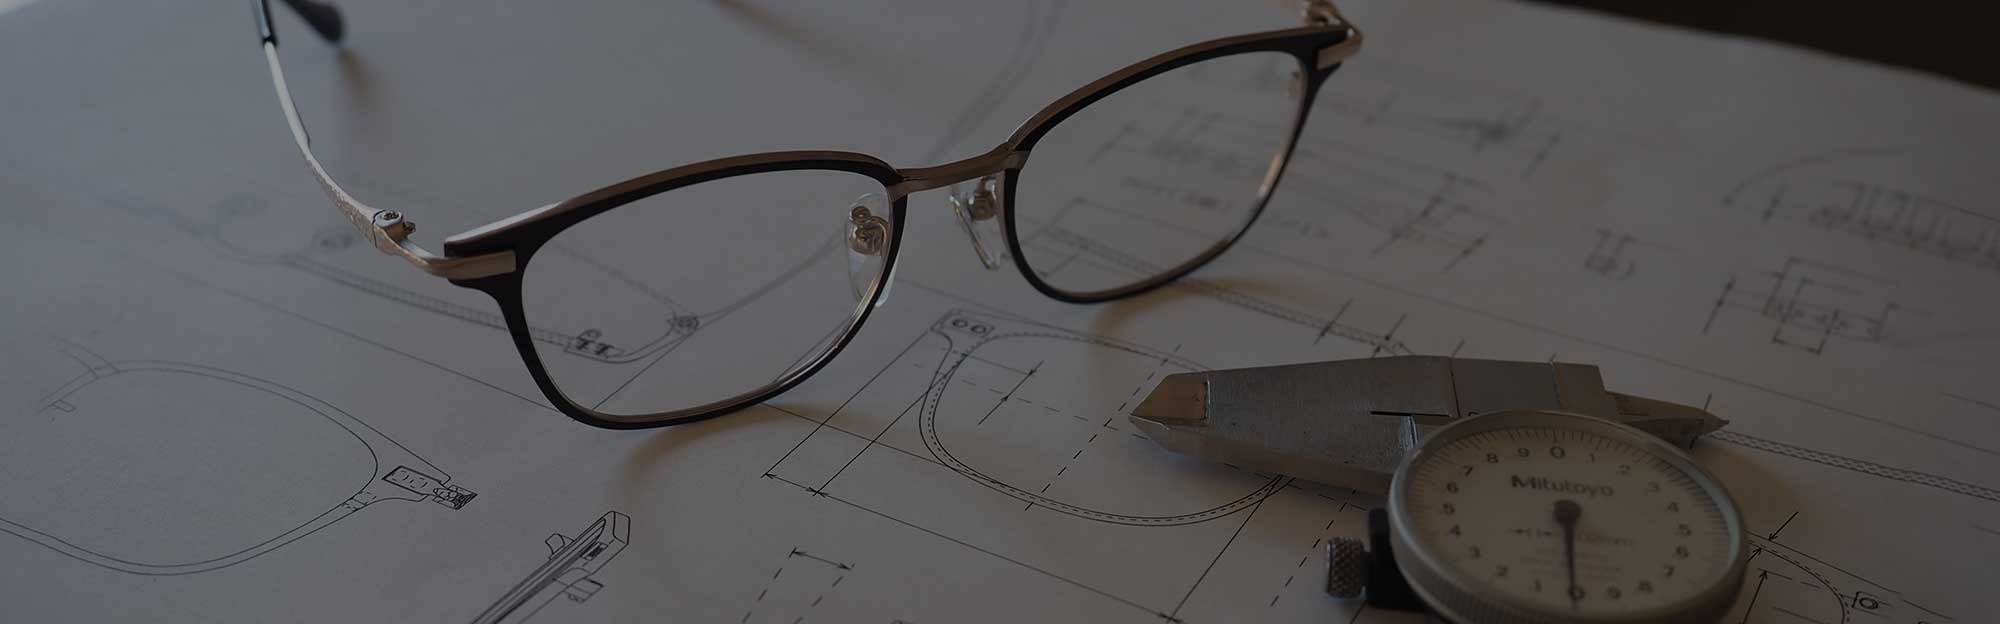 Sabae Eyeglass Manufacturing